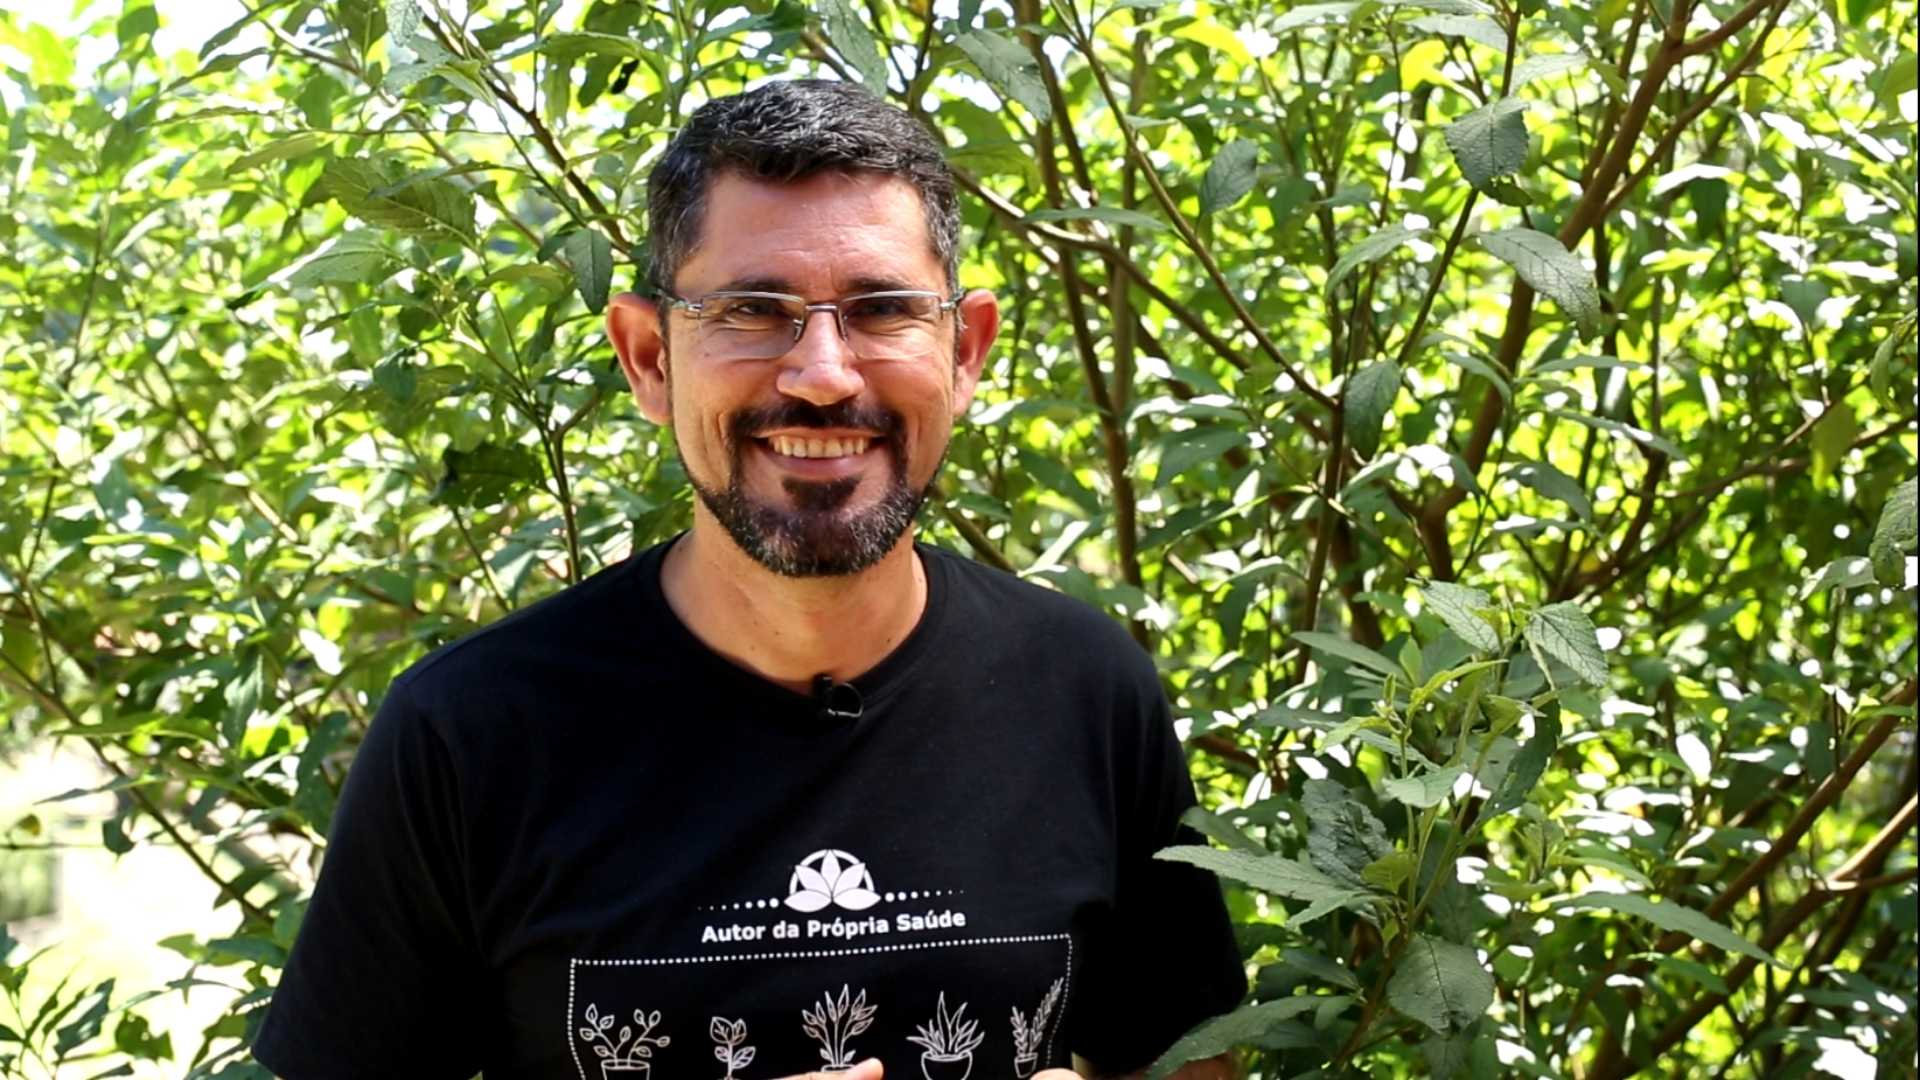 Daniel Forjaz com um pé de erva-baleeira: "meu primeiro vídeo foi sobre essa erva"